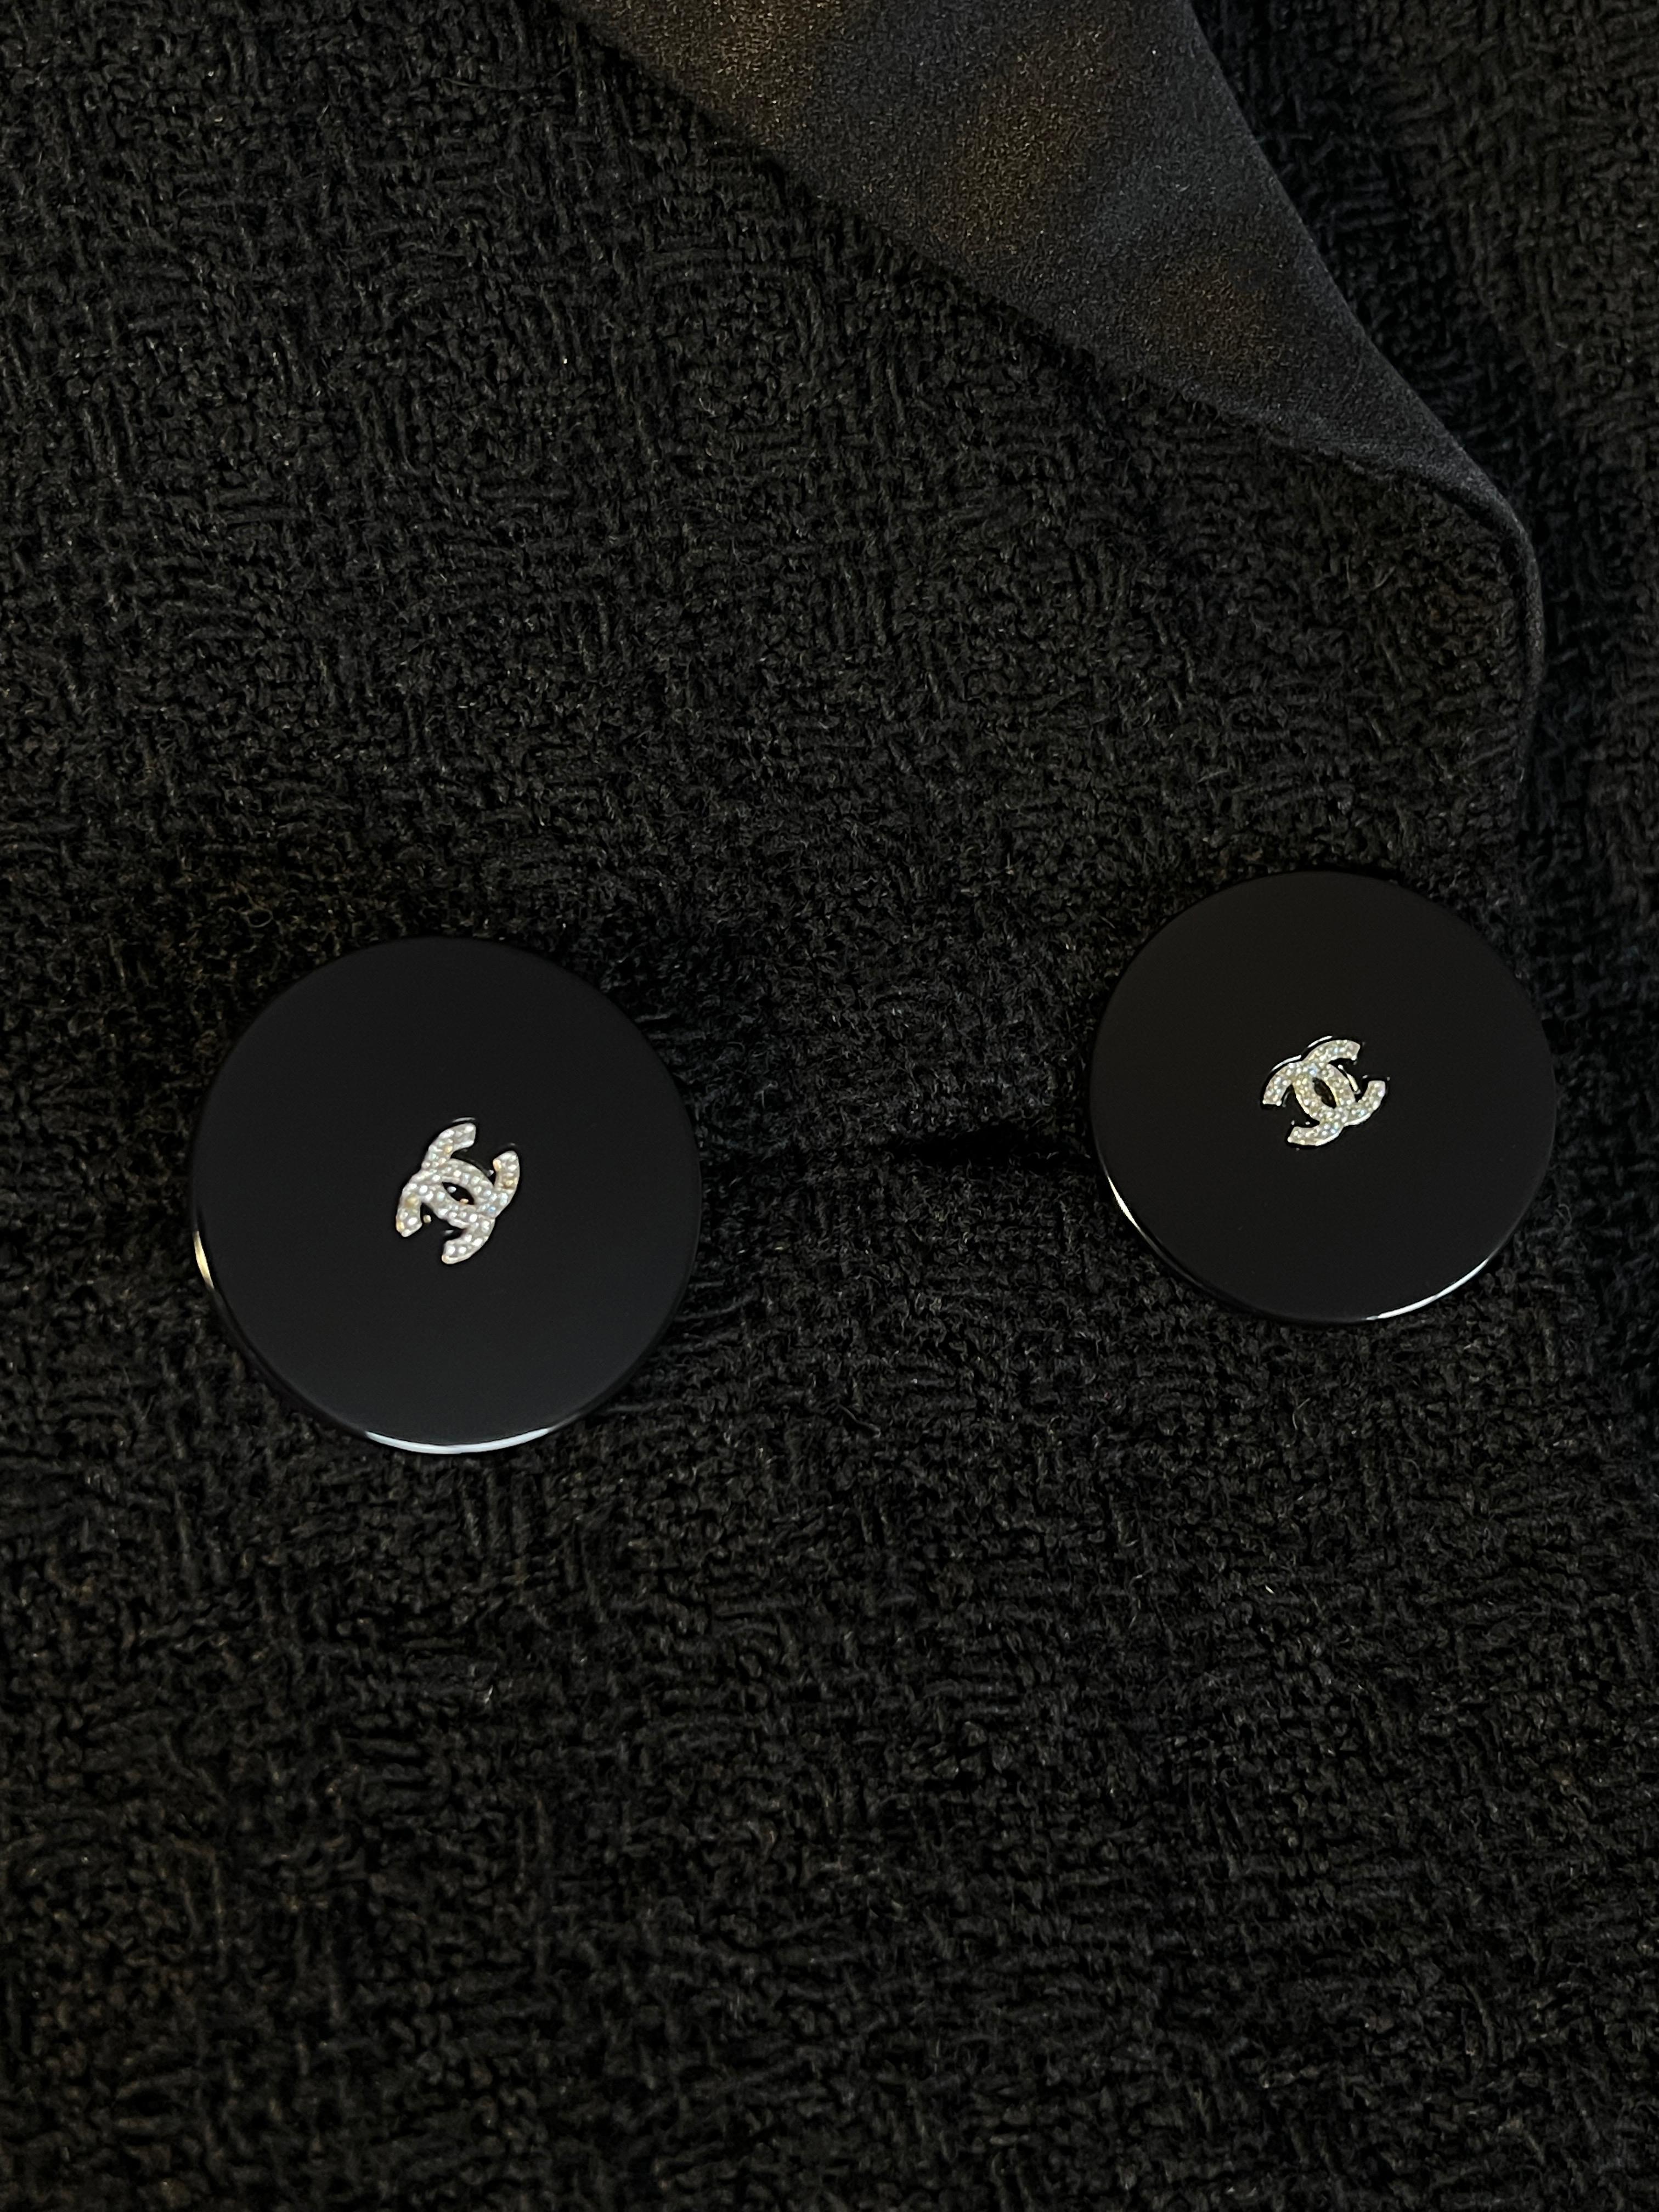 Chanel New Paris / Cosmopolite It-Girl Black Tweed Jacket For Sale 7